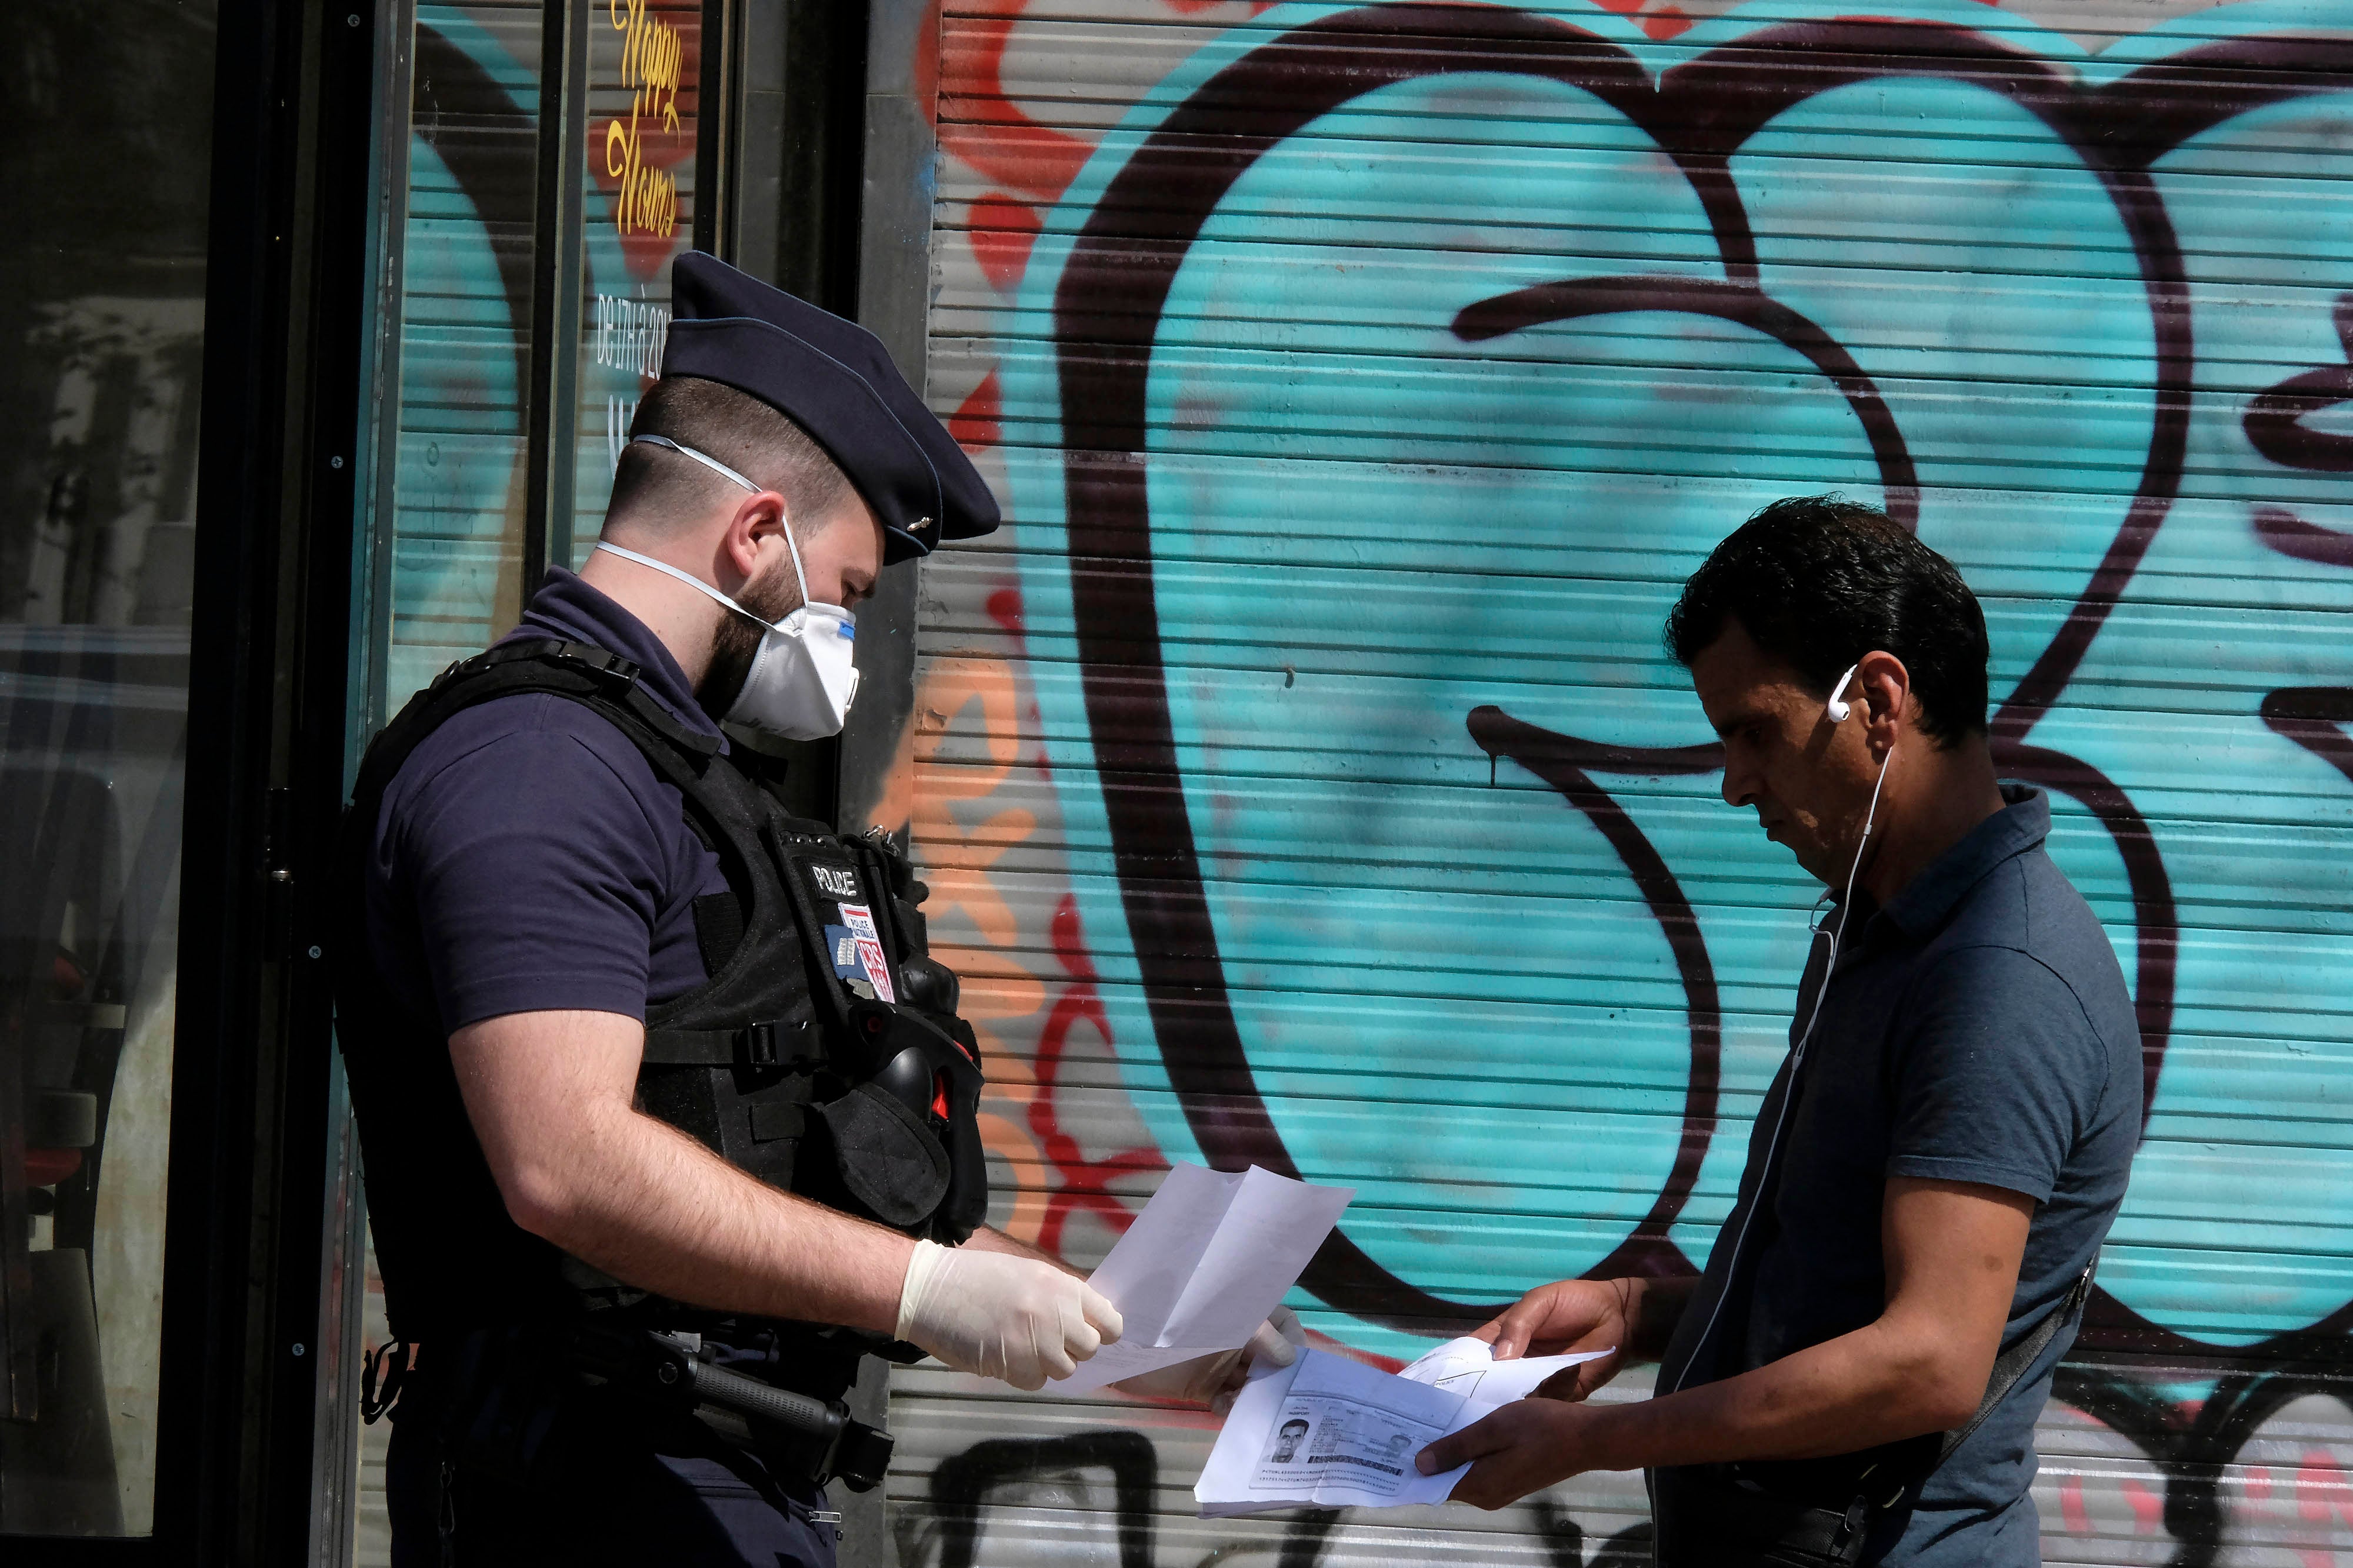 Un policier français portant un masque chirurgical de protection contre le coronavirus, contrôle les papiers d'un homme à Paris, alors qu'une quarantaine stricte est en vigueur en France pour arrêter la propagation de COVID-19. Paris, France, le 16 avril 2020. 